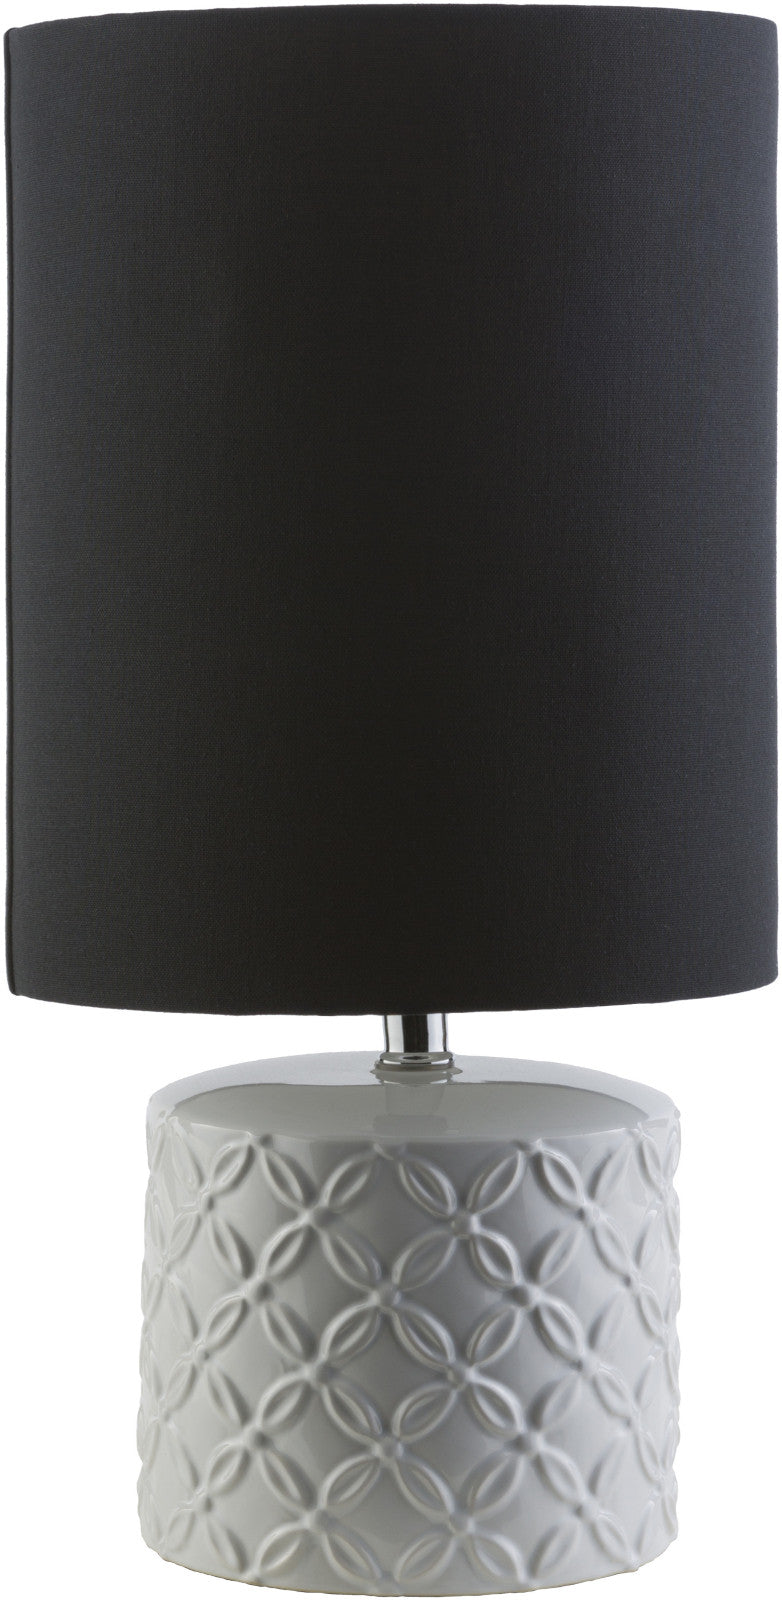 Surya Whitsett WHT-372 Black Lamp Table Lamp